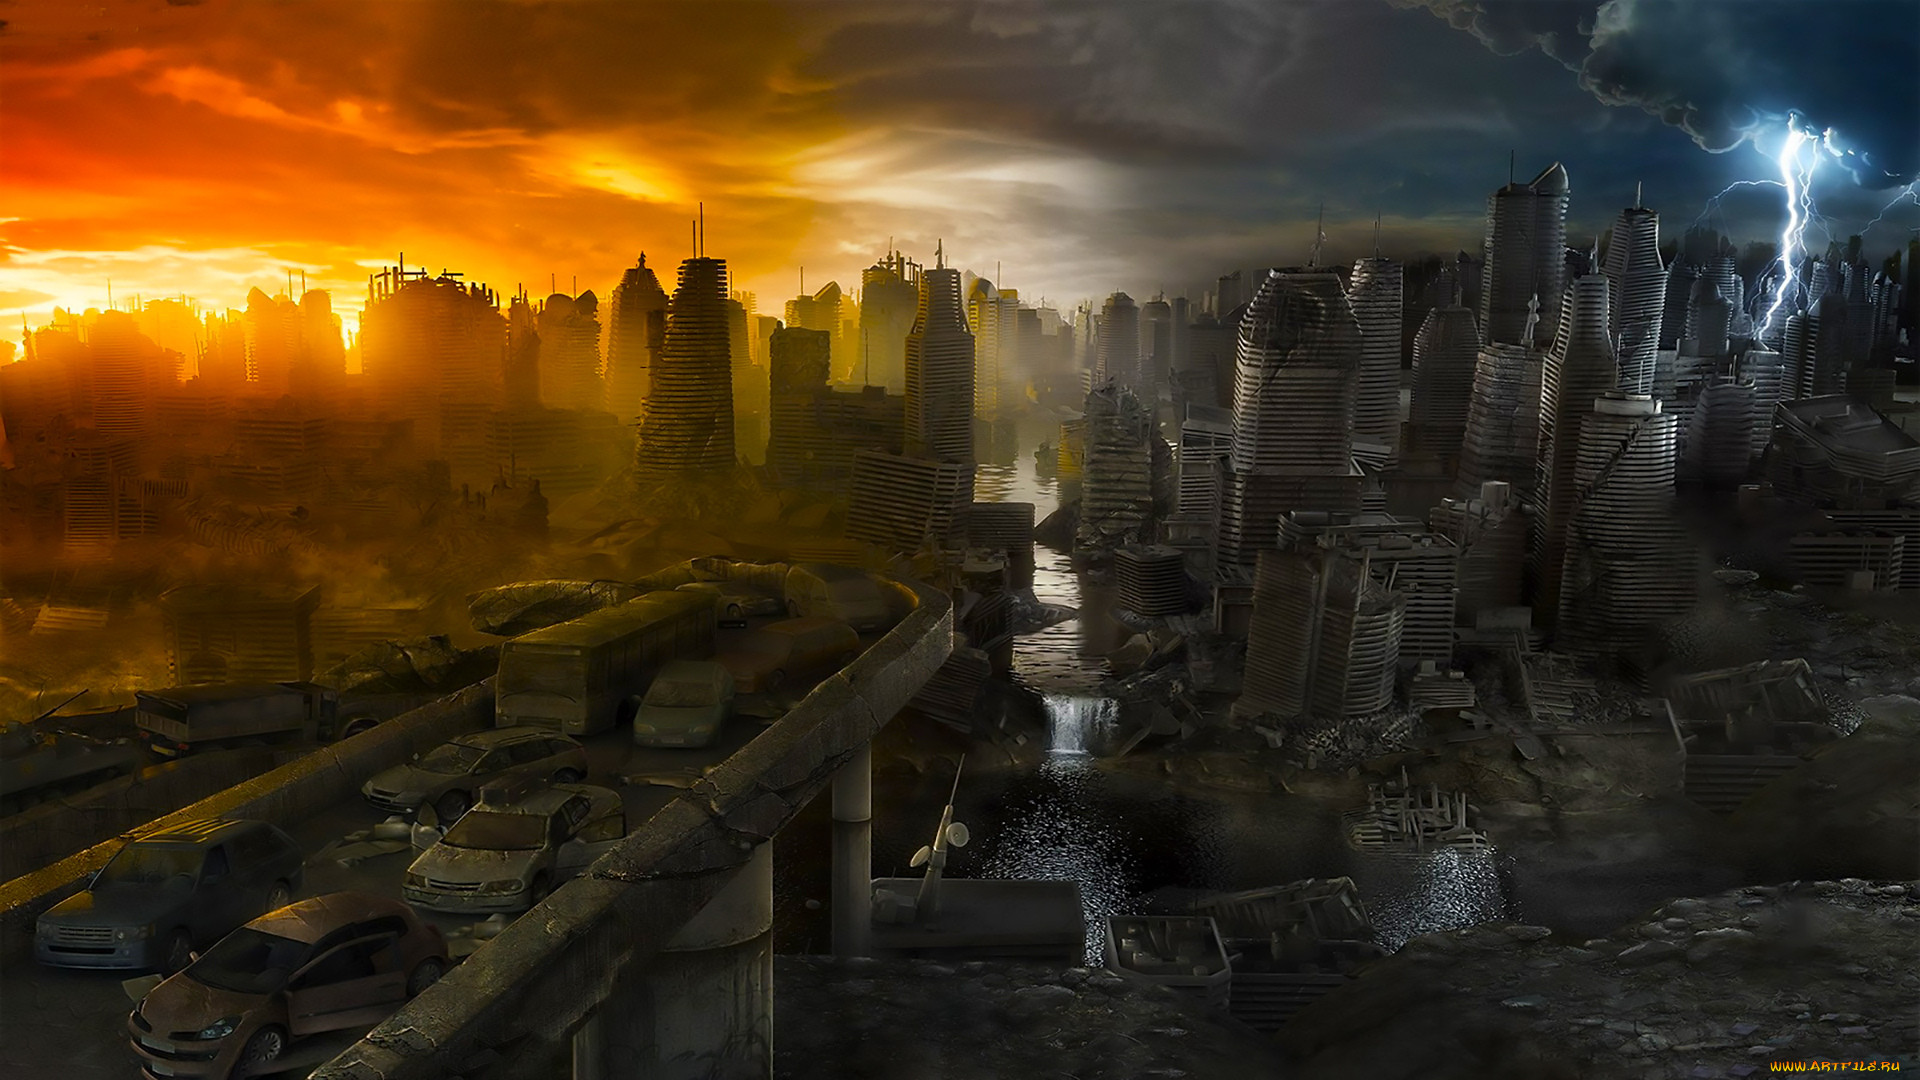 Нужна конец света. Разрушенный город. Город после апокалипсиса. Разрушенный город будущего. Конец света.